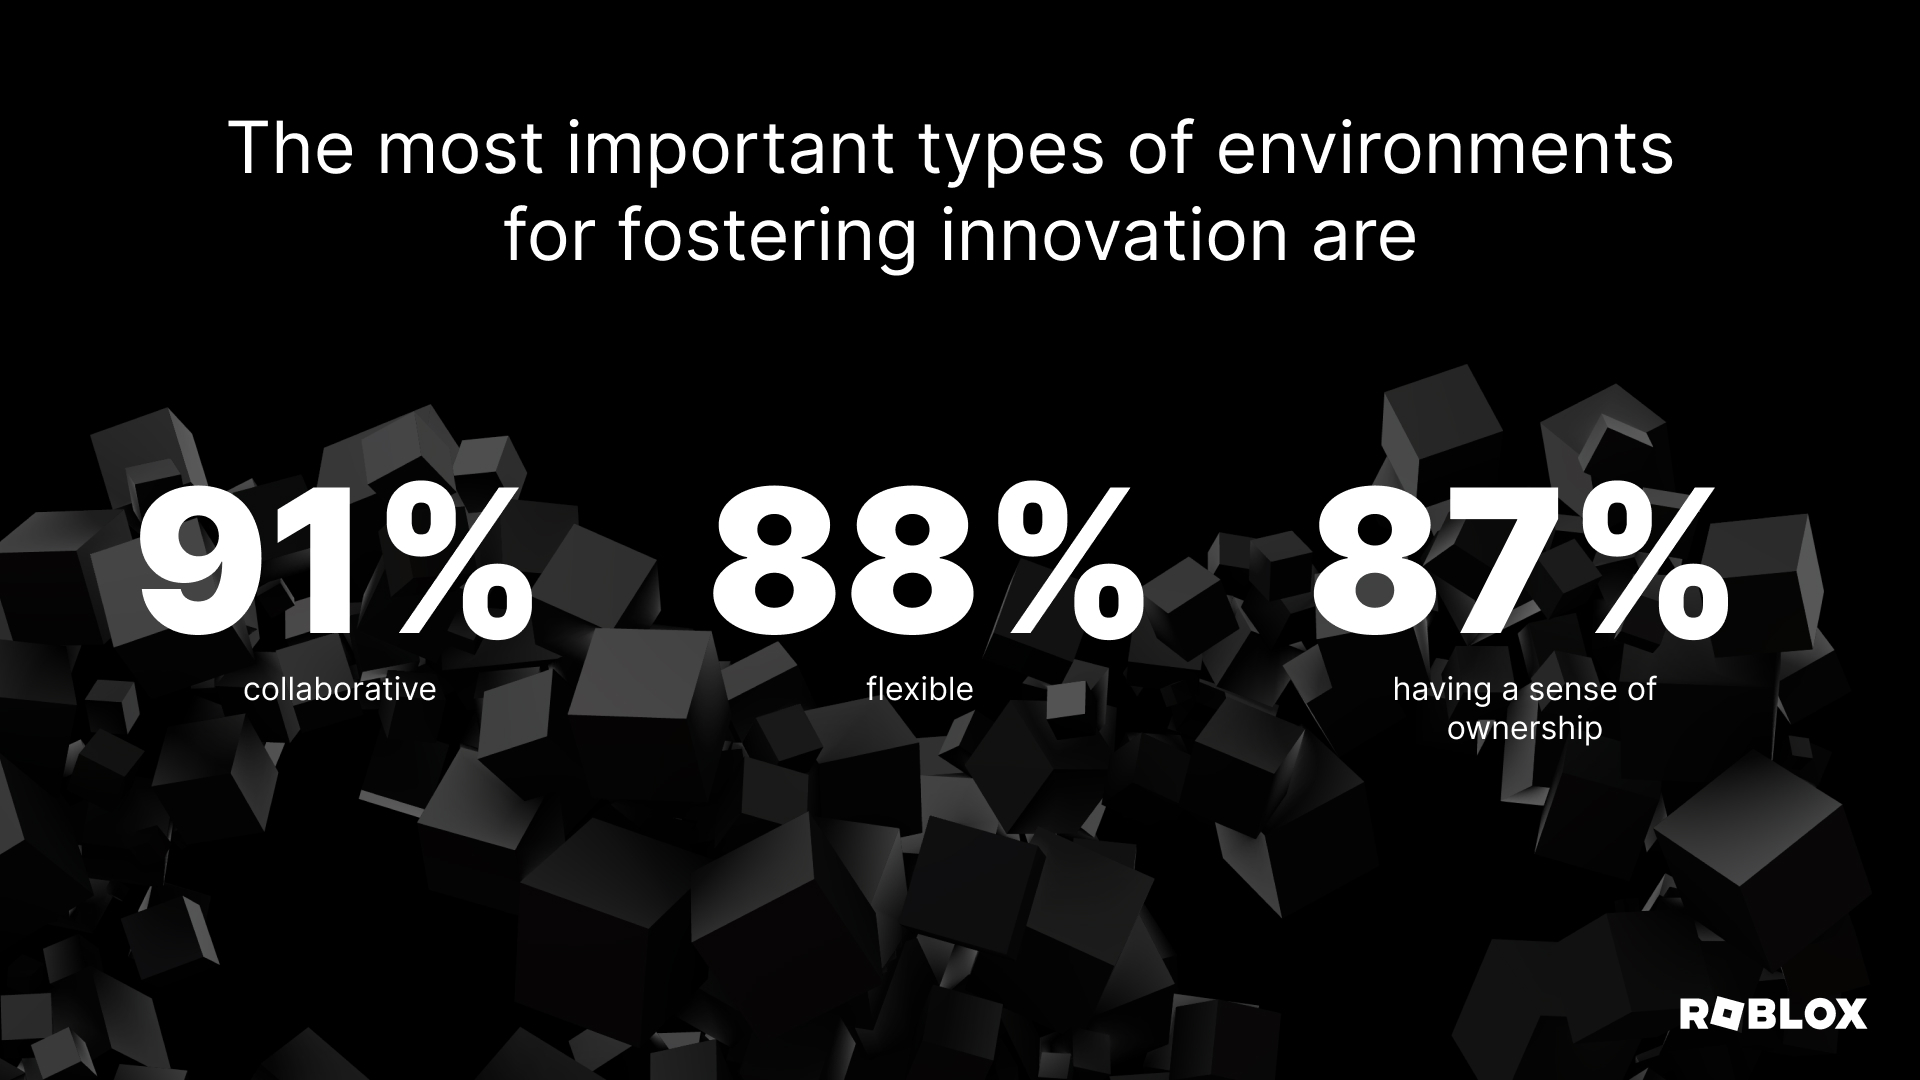 혁신 촉진을 위한 가장 중요한 환경 유형은 다음과 같습니다. 91% 협업, 88% 유연성, 87% 주인의식